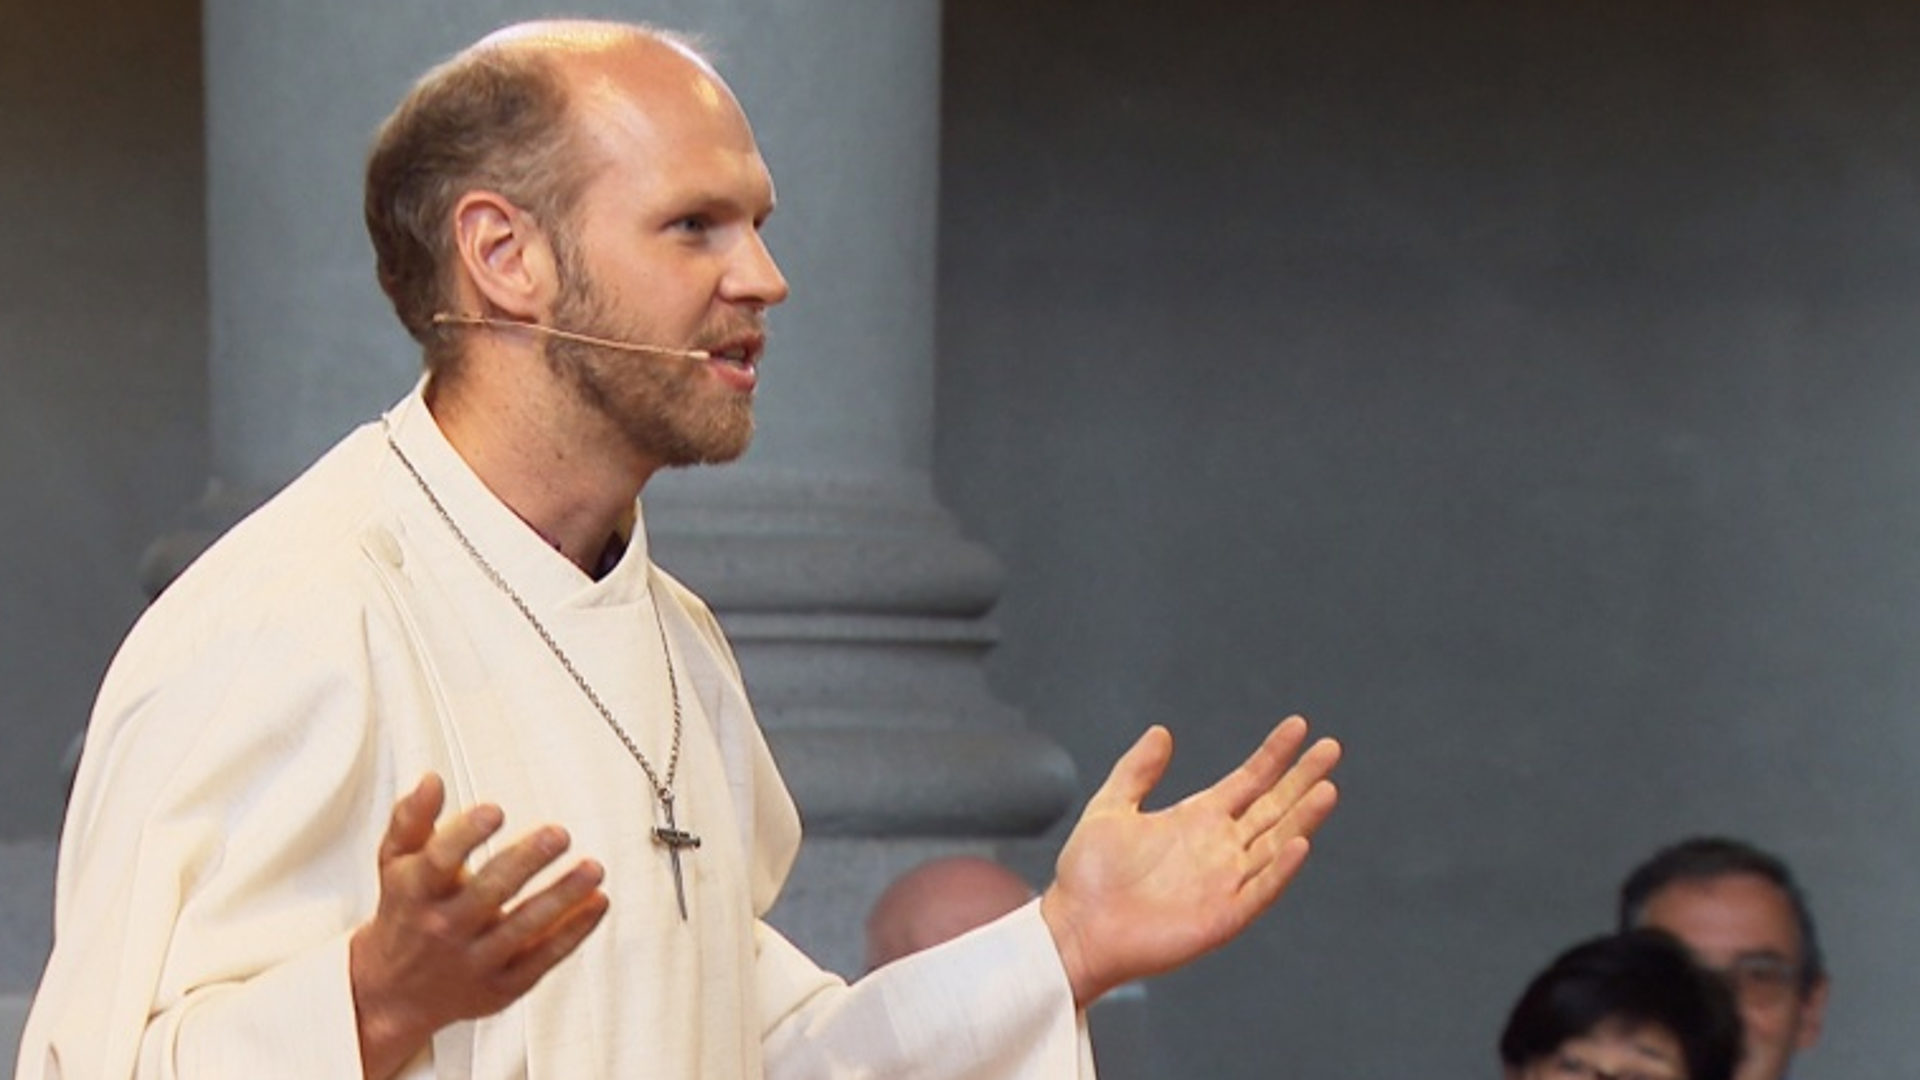 Die Kirche öffnen und alte Rituale wiederentdecken: Christian Walti während der Sonntagspredigt in der Friedenskirche Bern